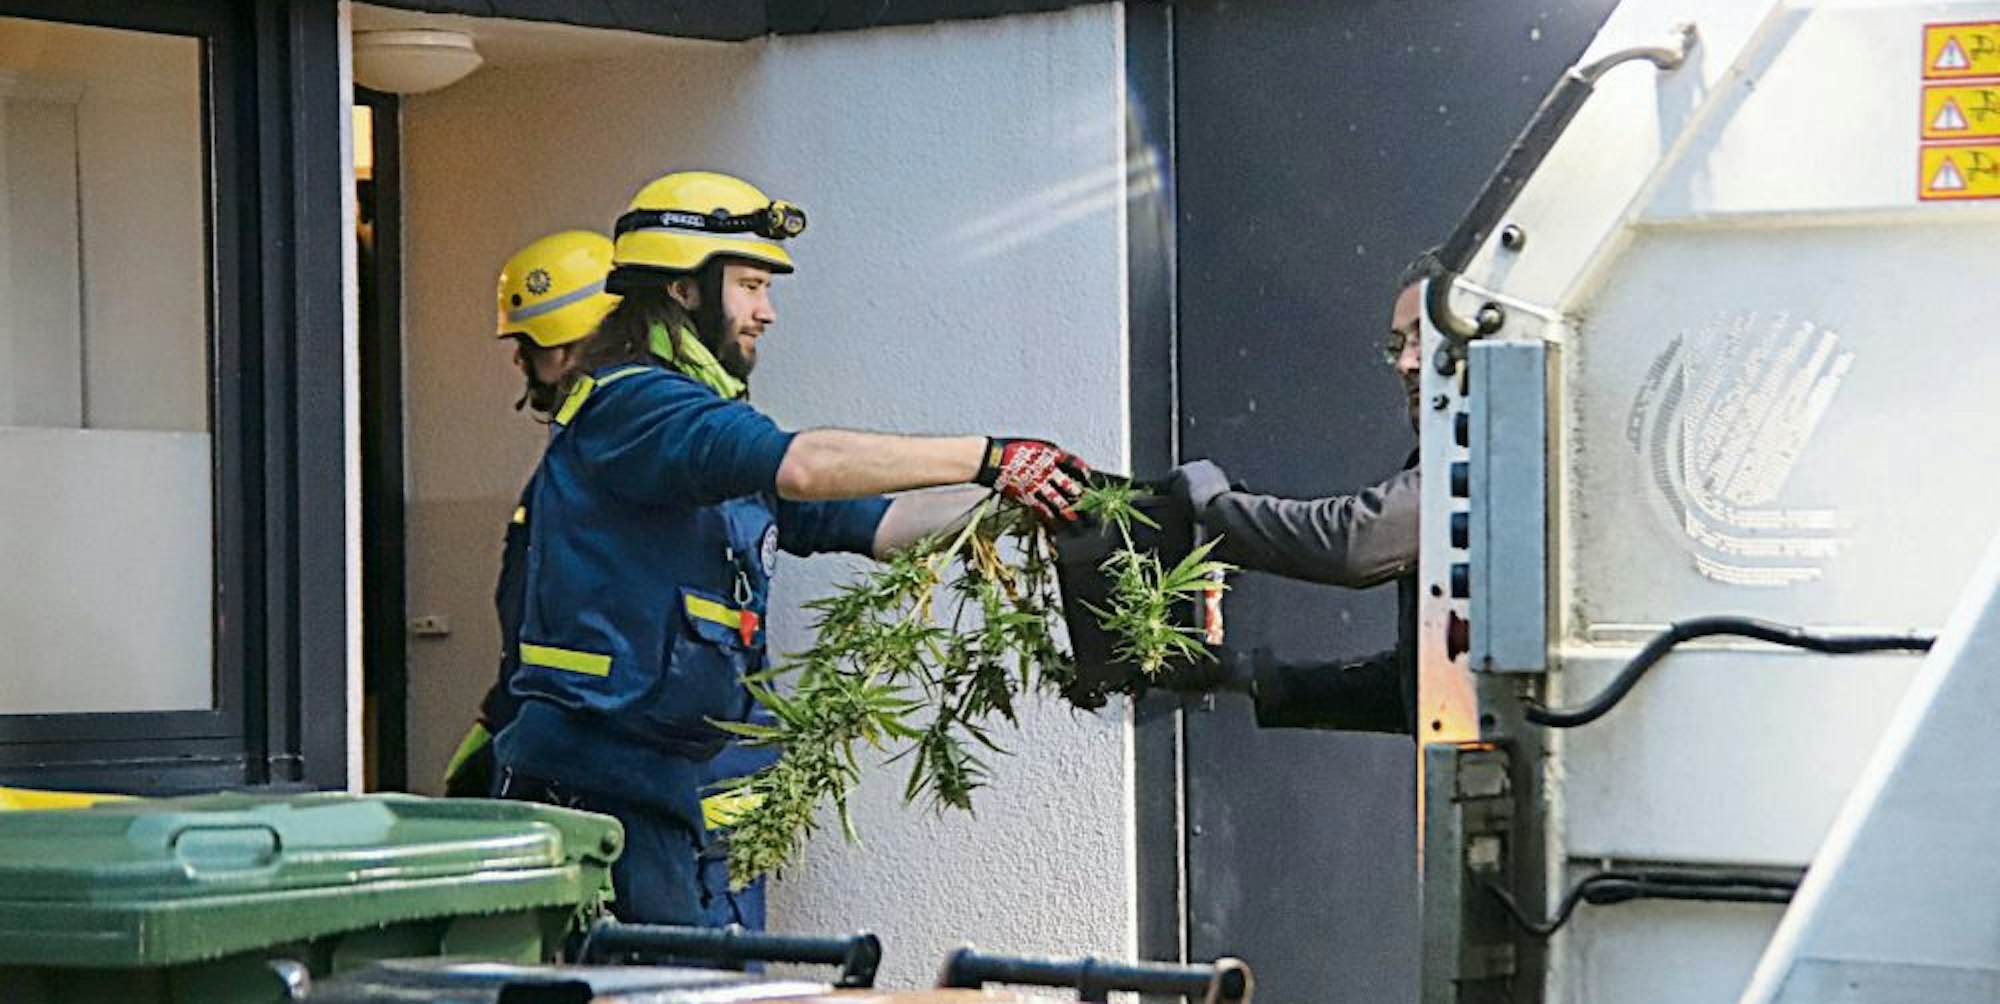 THW und Kripo transportierten die Cannabispflanzen im Januar 2020 ab.